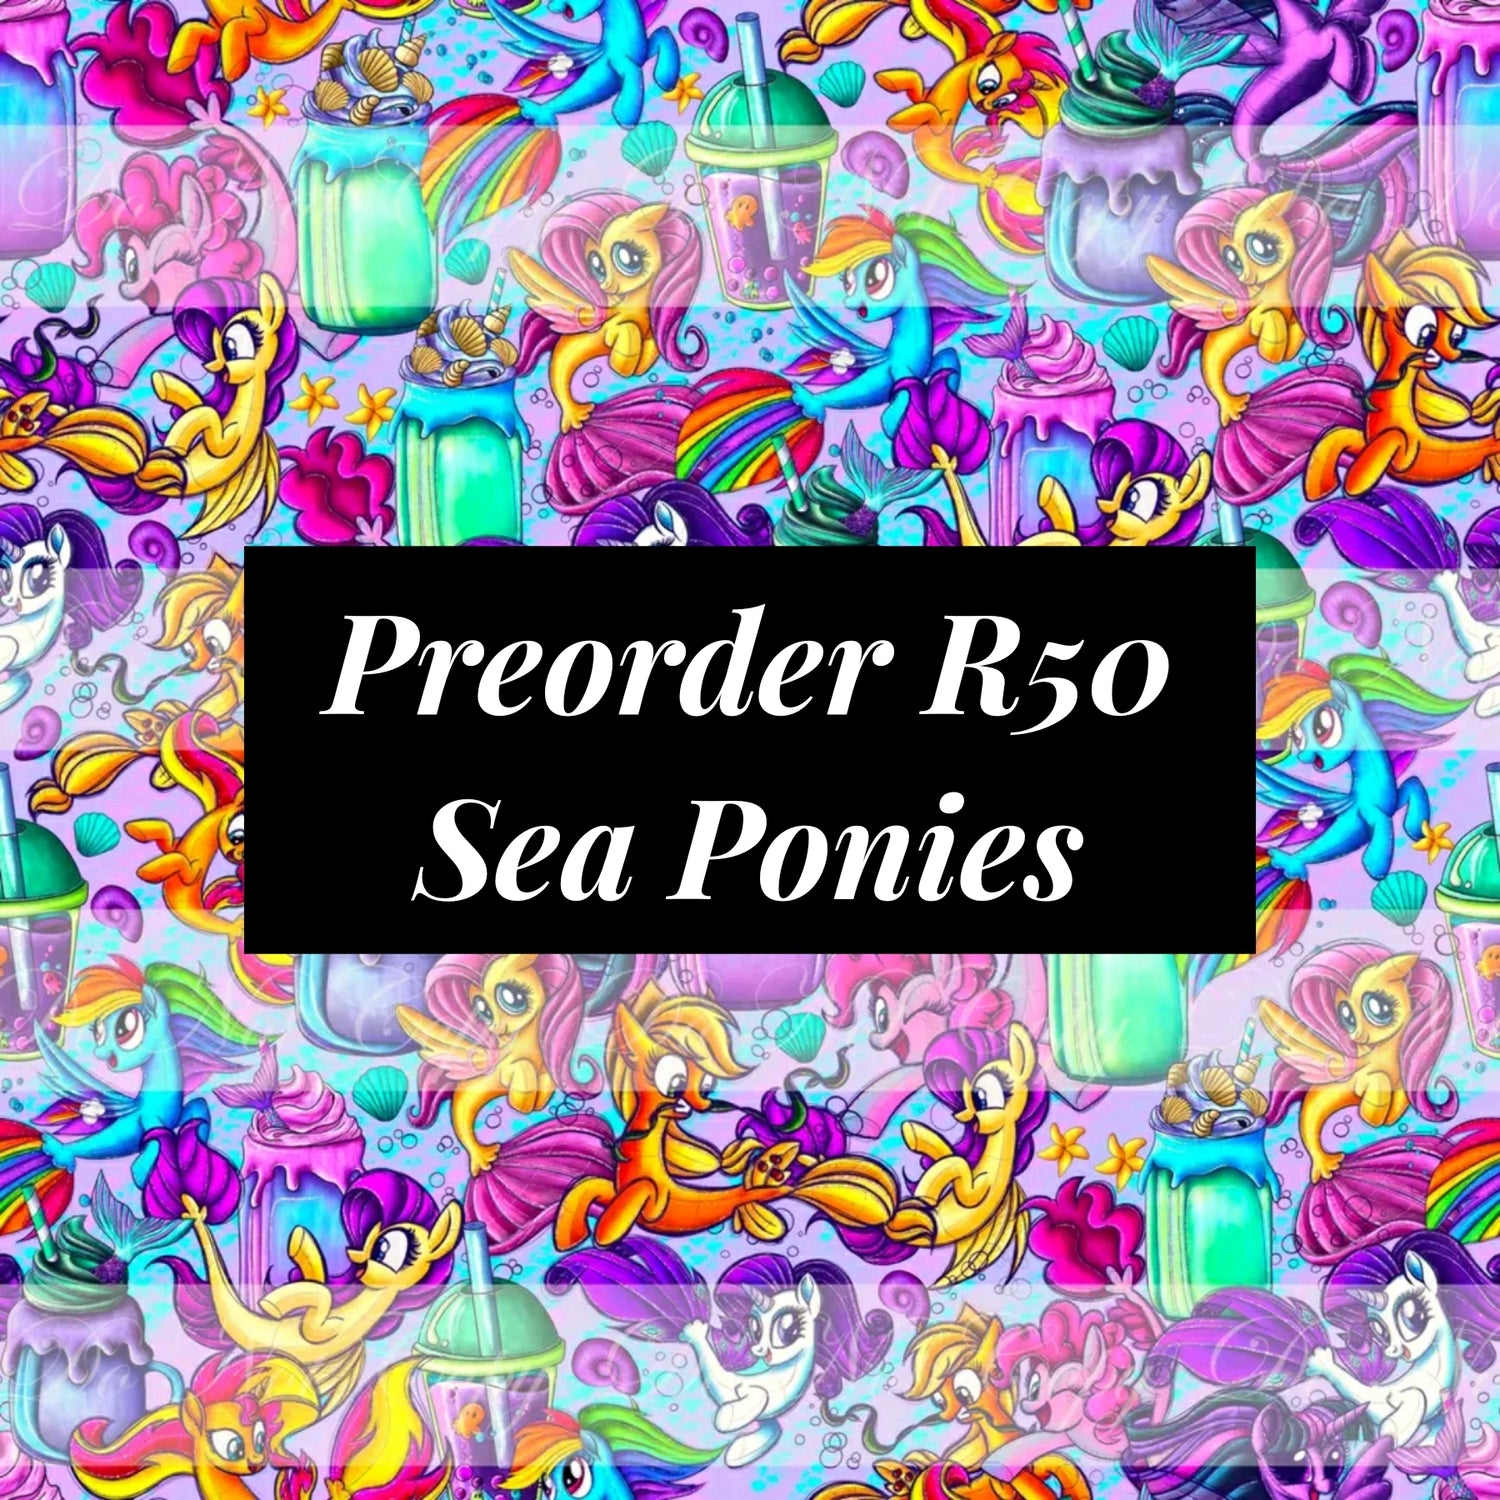 Preorder R50 Sea Ponies